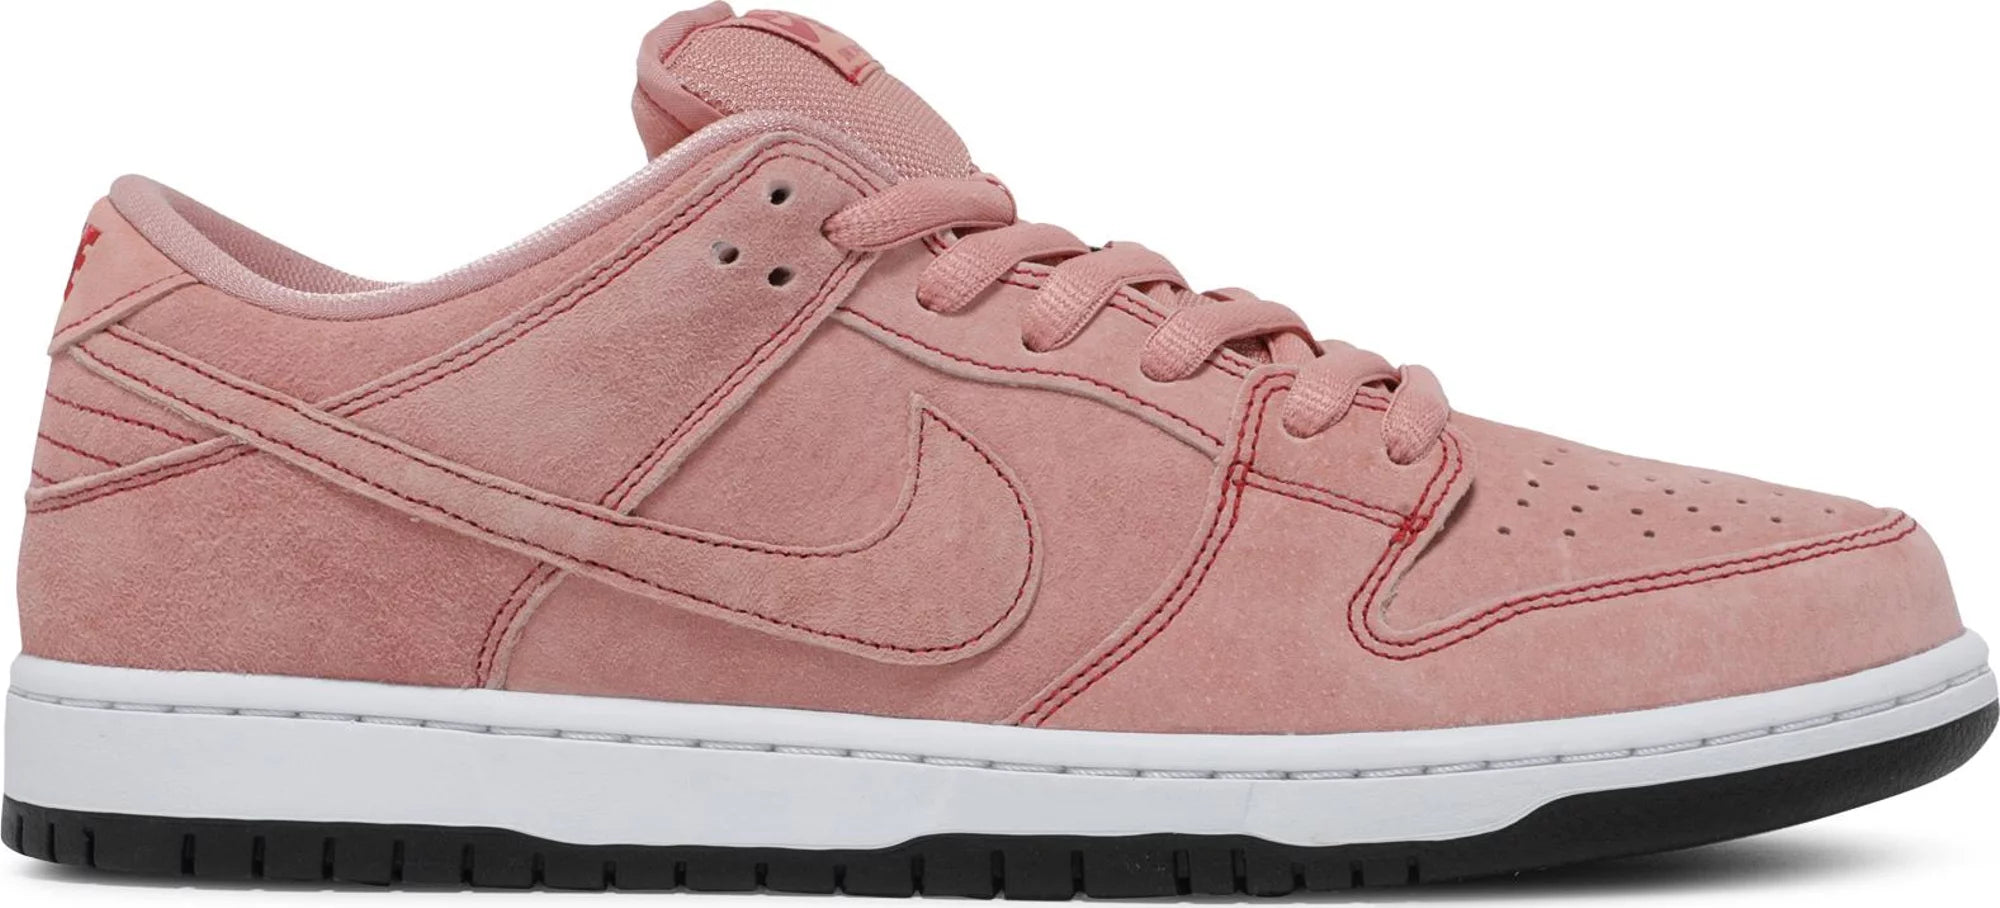 Nike SB Dunk Low "Pink Pig" 2021